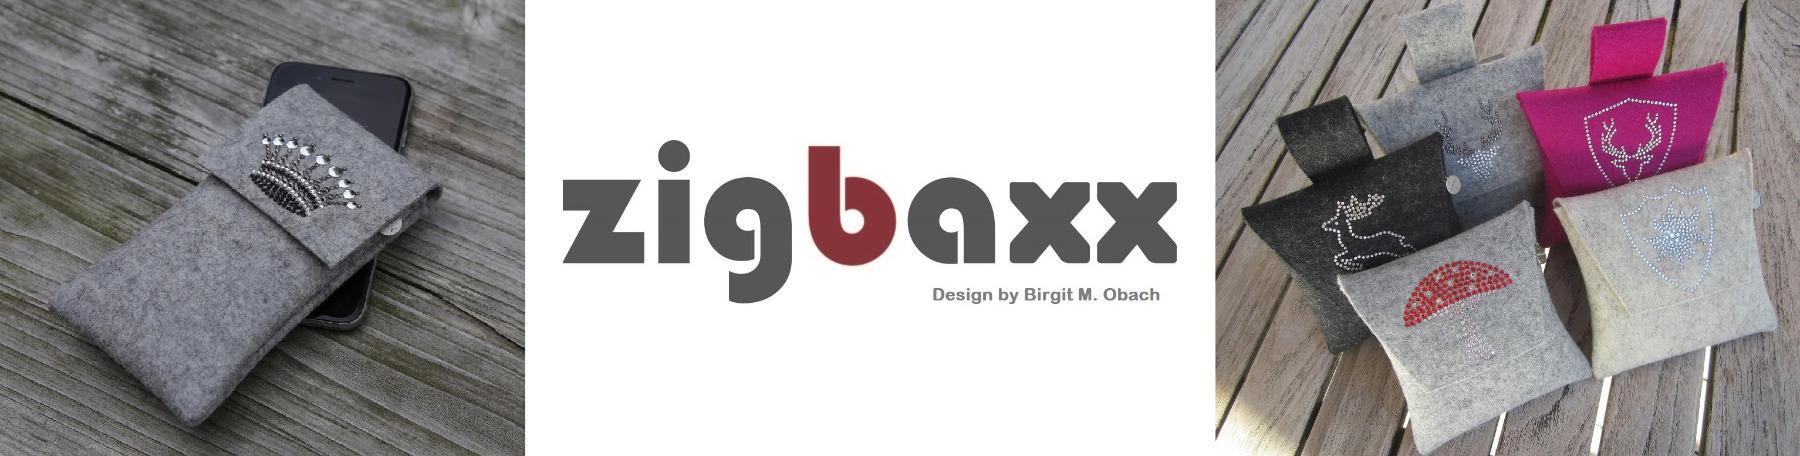 zigbaxx_Hintergrundbild_Shop